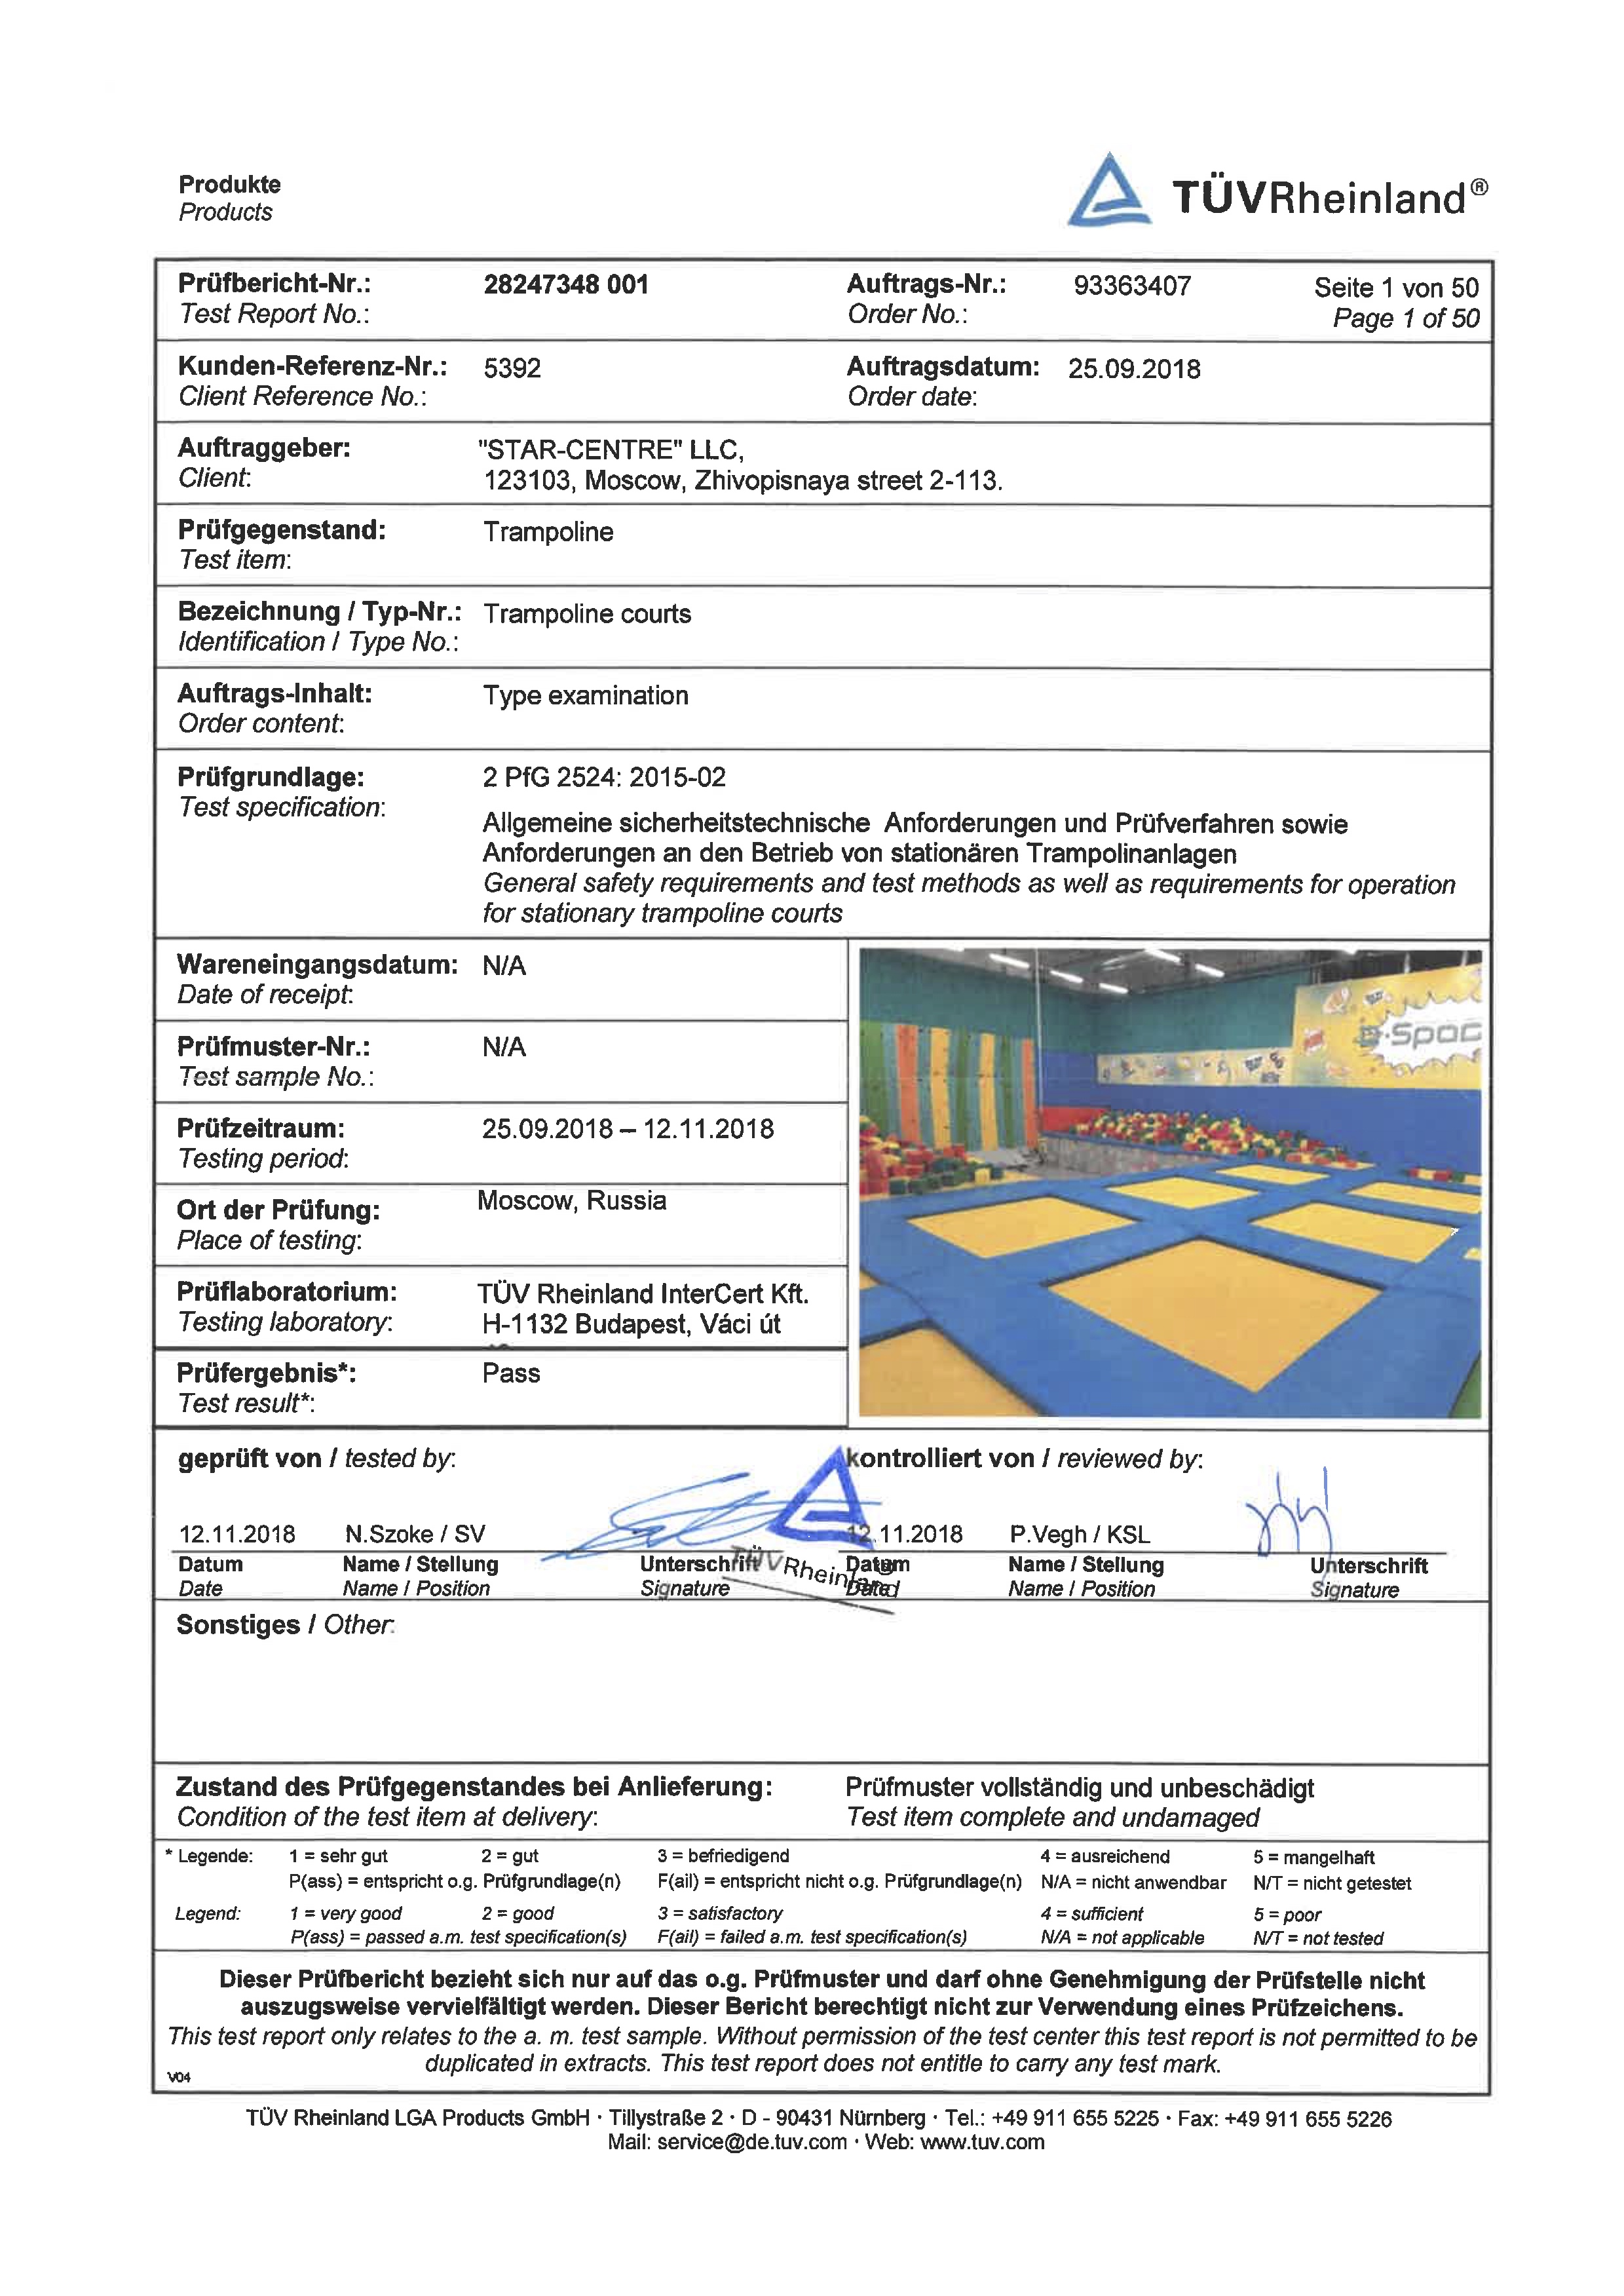 Сертификат "TUV" (для Европы) - БАТУТНЫЕ ПАРКИ - 2 PfG 2524 Trampoline courts